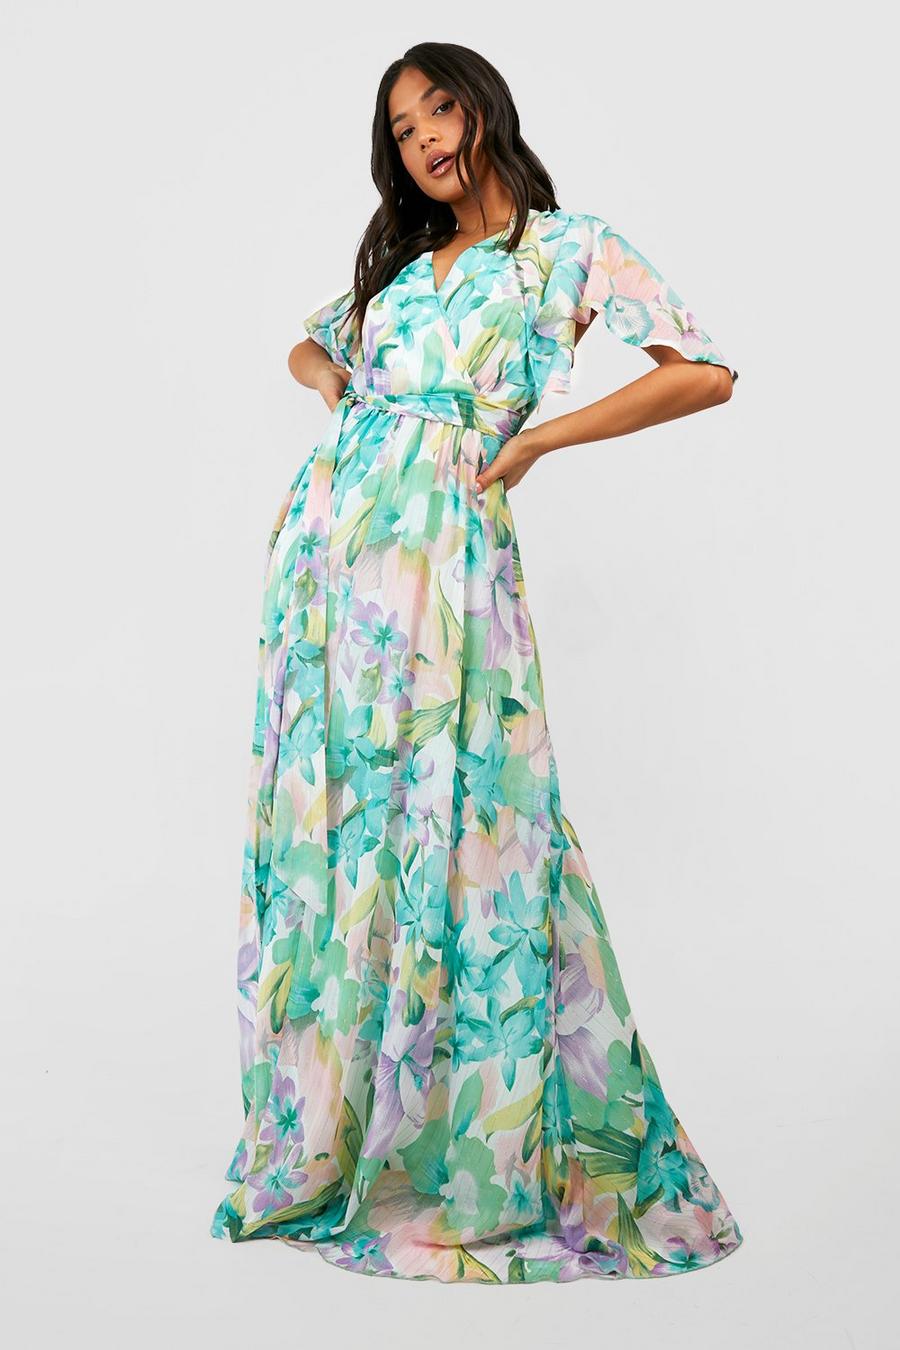 https://media.boohoo.com/i/boohoo/gzz44295_mint_xl/female-mint-pastel-floral-angel-sleeve-strappy-maxi-dress/?w=900&qlt=default&fmt.jp2.qlt=70&fmt=auto&sm=fit